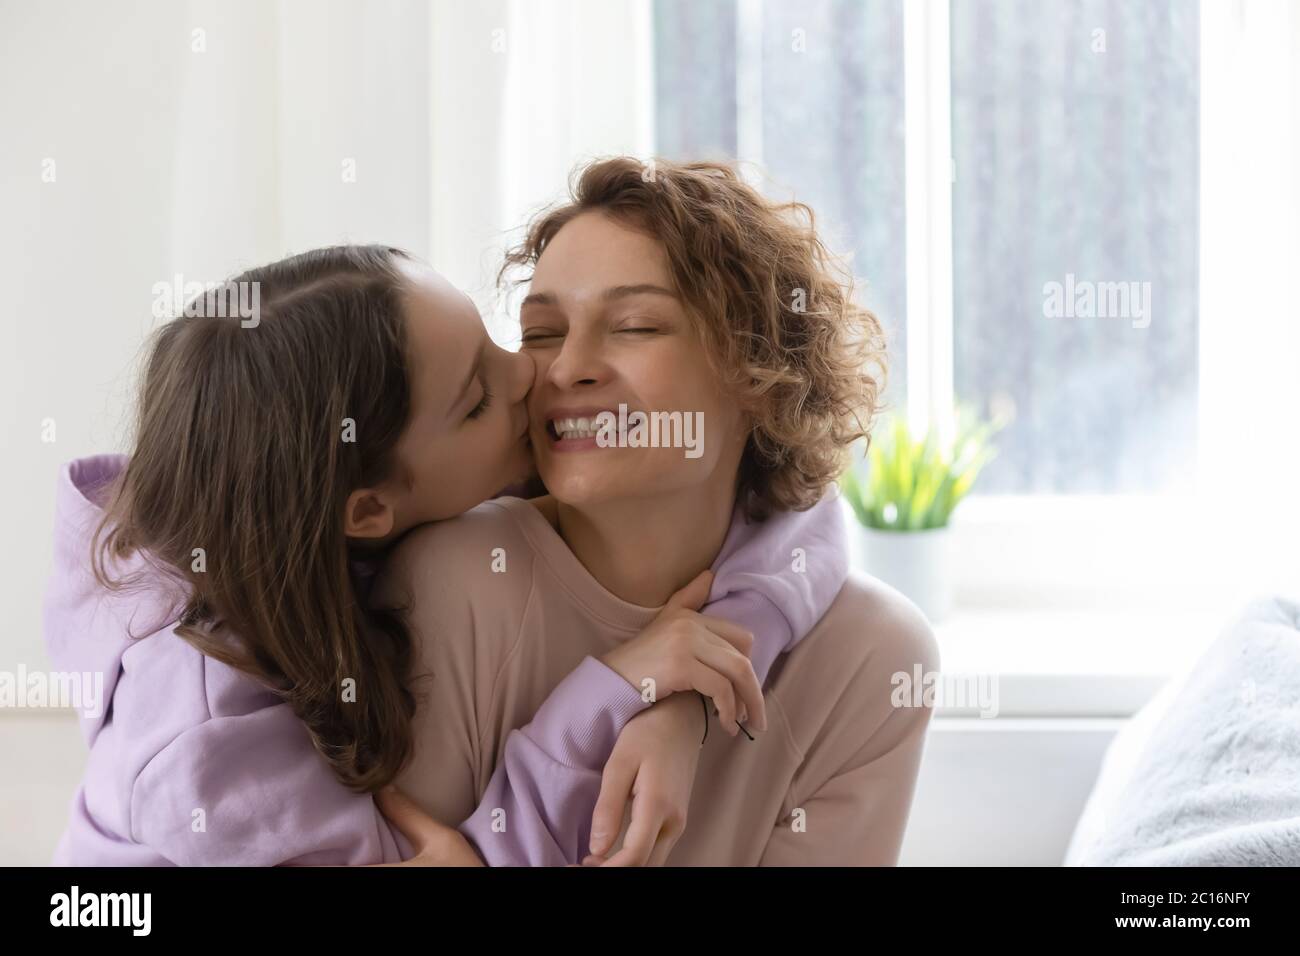 Dankbar teen Tochter küssen glücklich junge Mutter Stockfoto